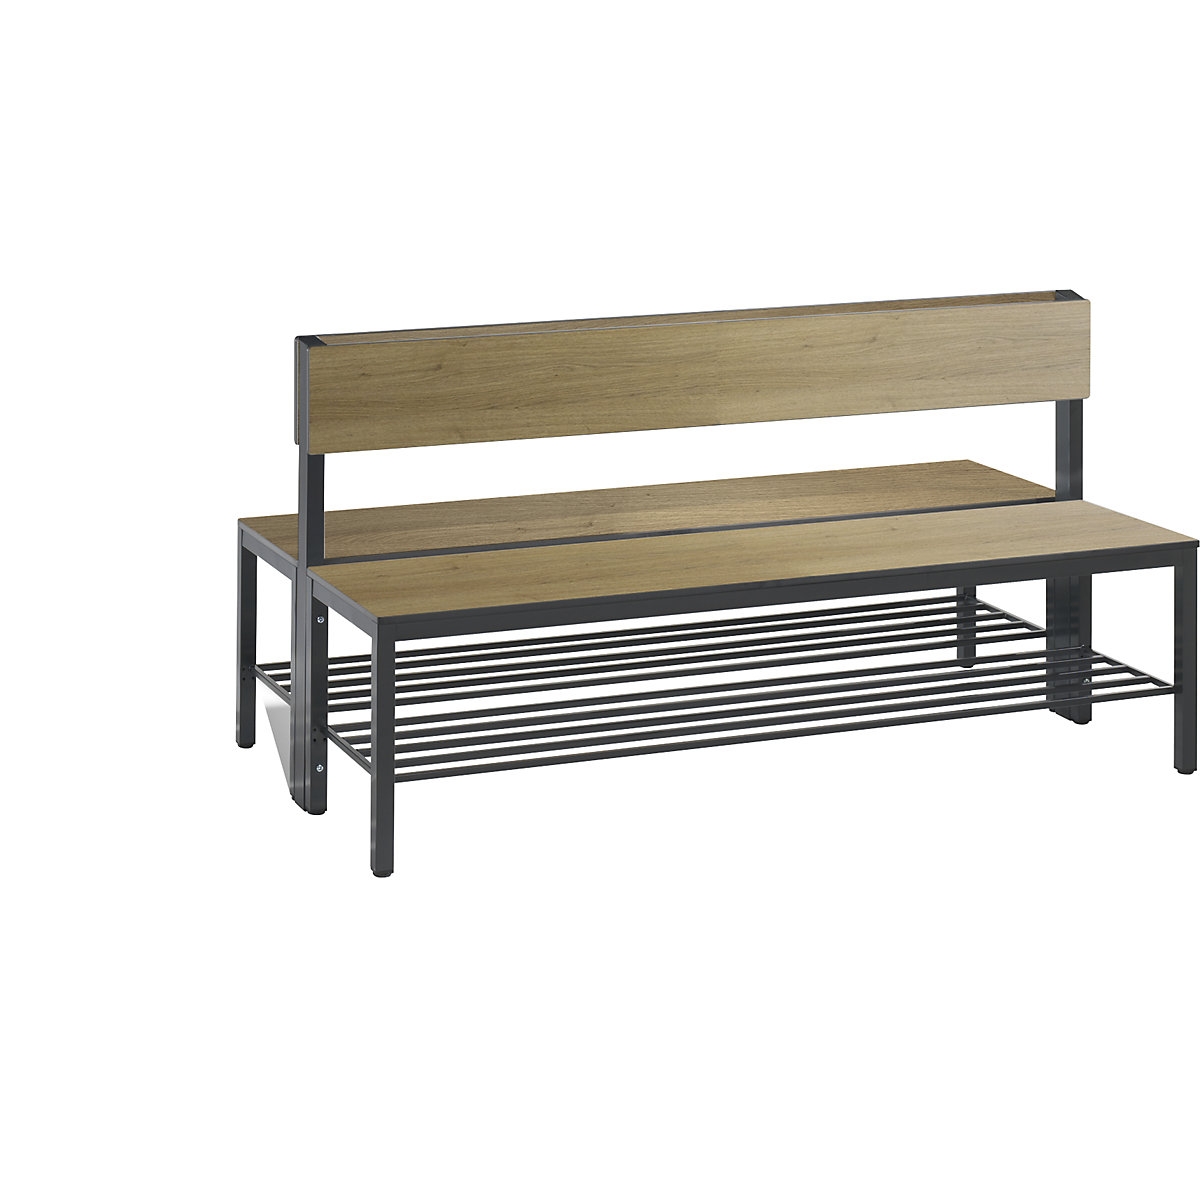 Šatňová lavica BASIC PLUS, dvojstranná – C+P, plocha sedadla HPL, polovysoká, rošt na obuv, dĺžka 1500 mm, vzor dub-9